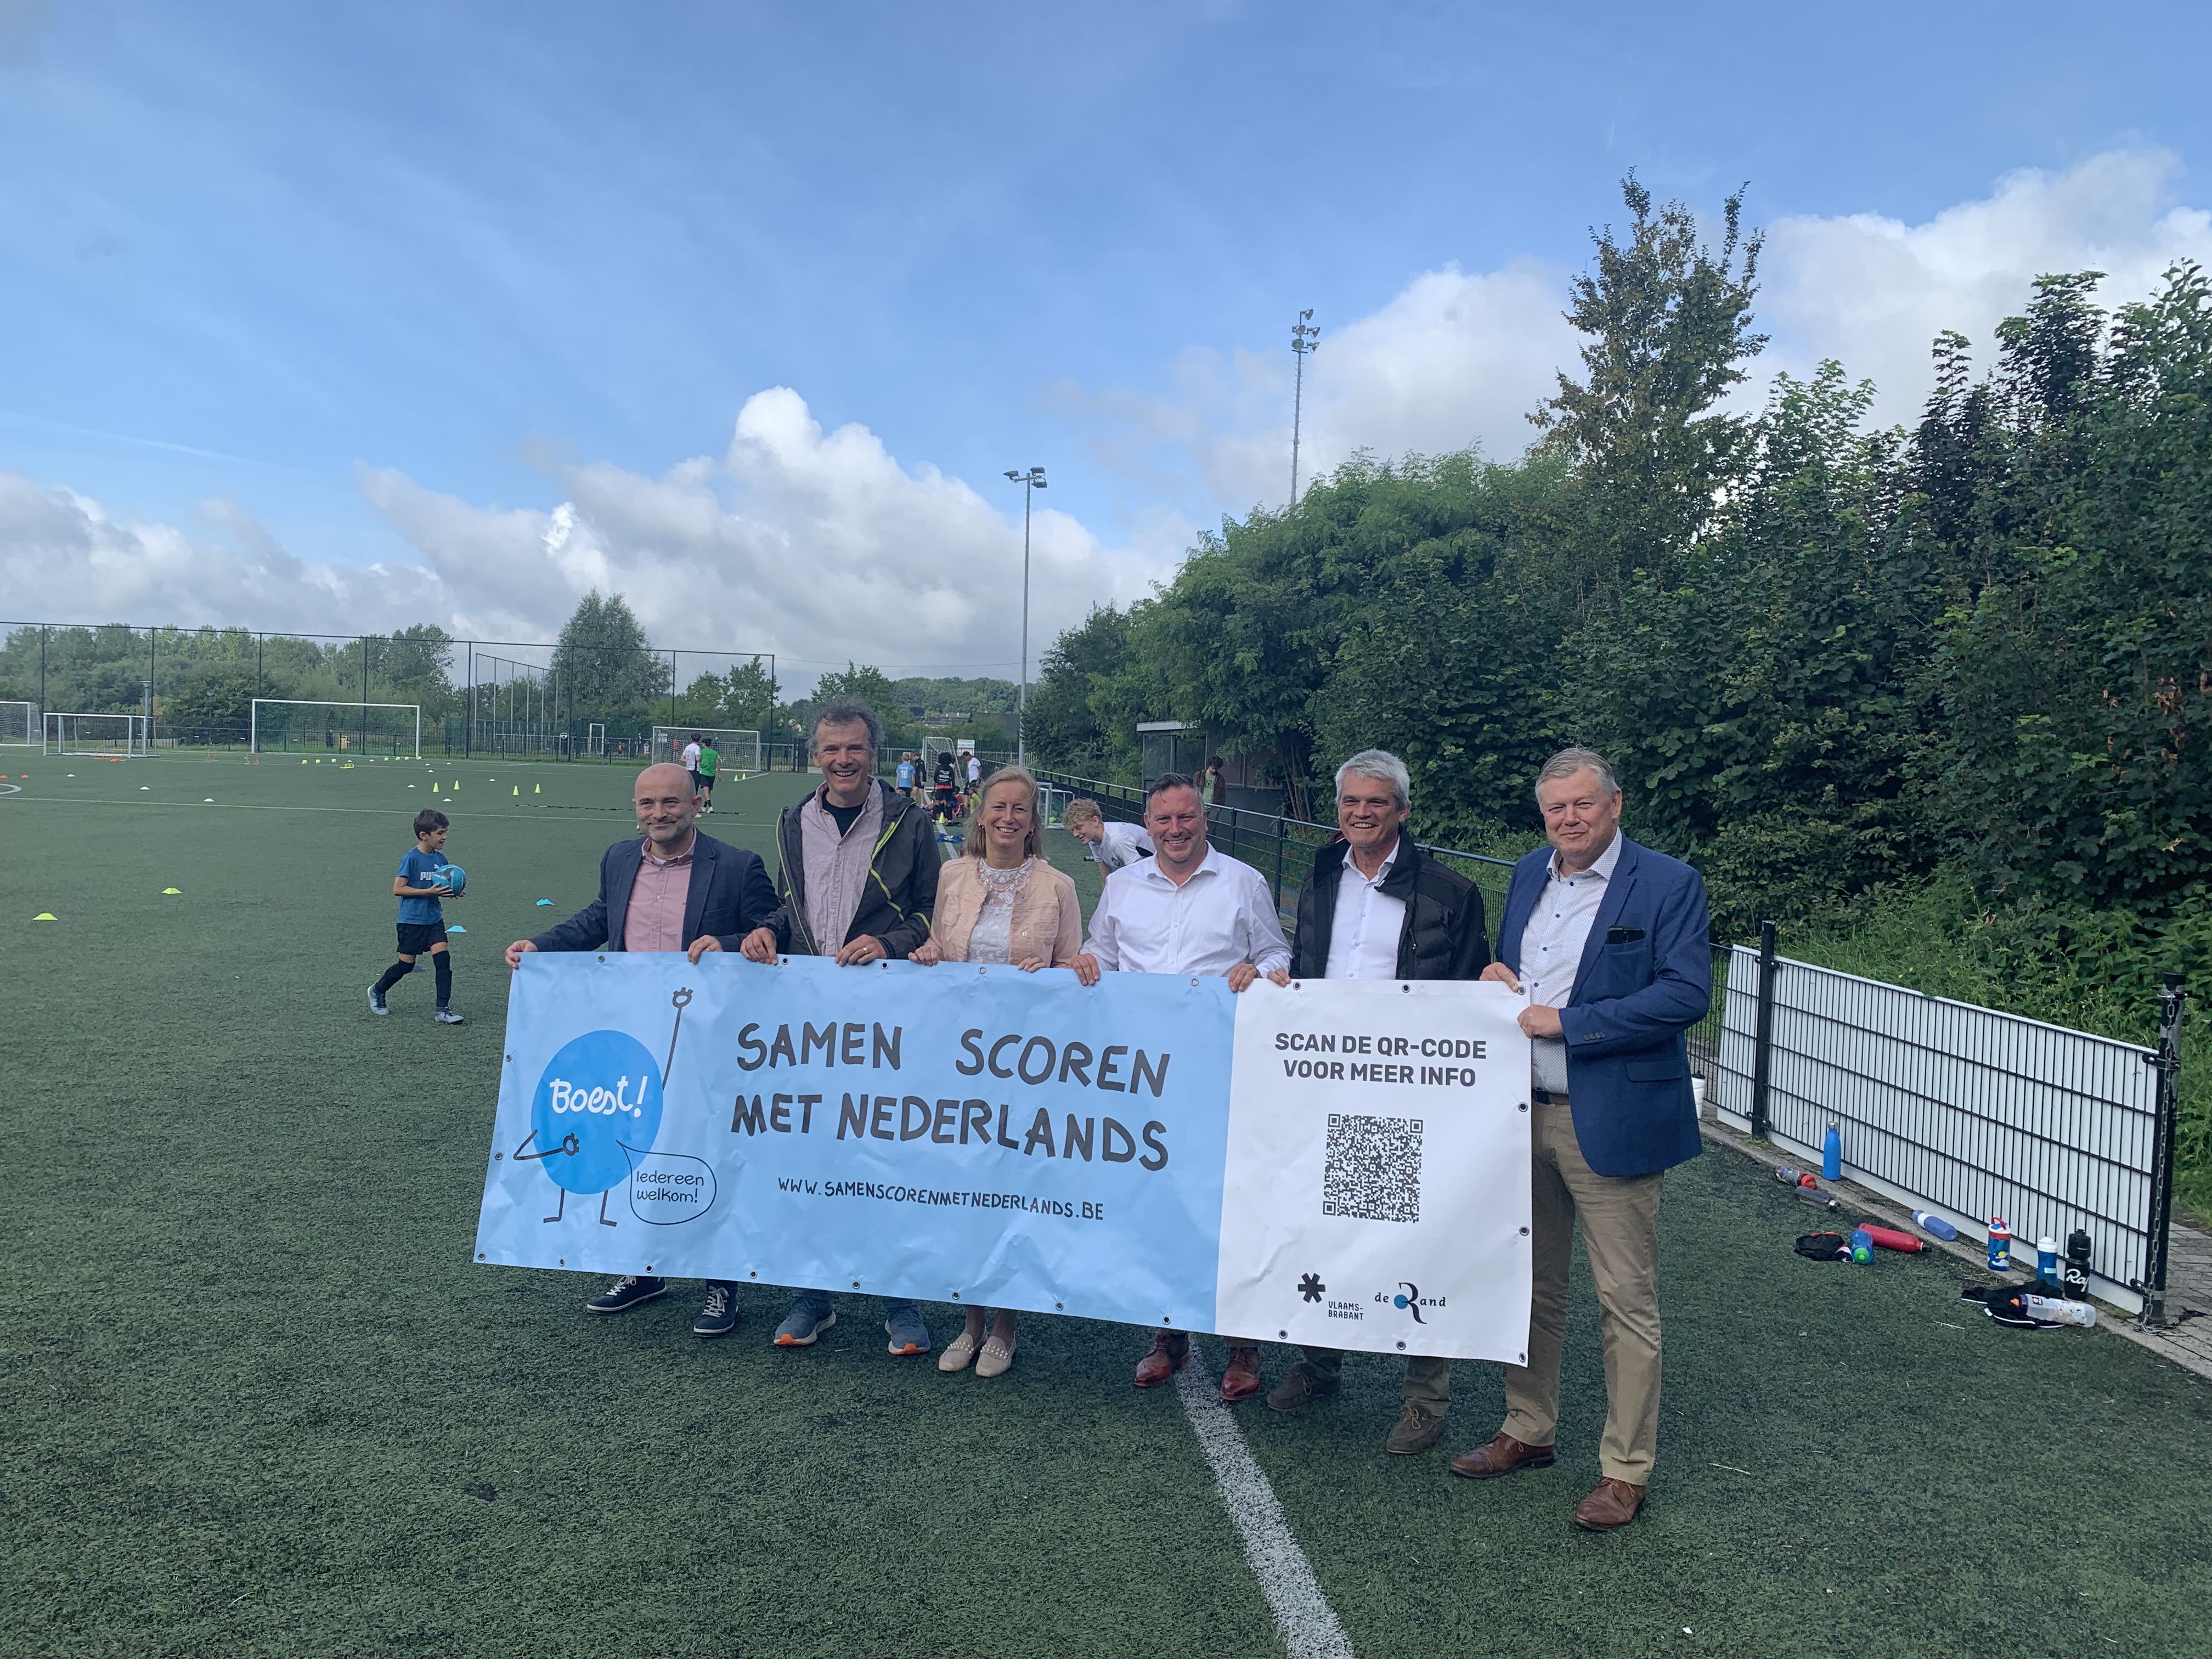 Op 9 augustus overhandigde gedeputeerde Gunther Coppens de eerste 'Samen scoren met Nederlands'-spandoek aan het gemeentebestuur van Asse op het voetbalveld van FC Asse 2002.